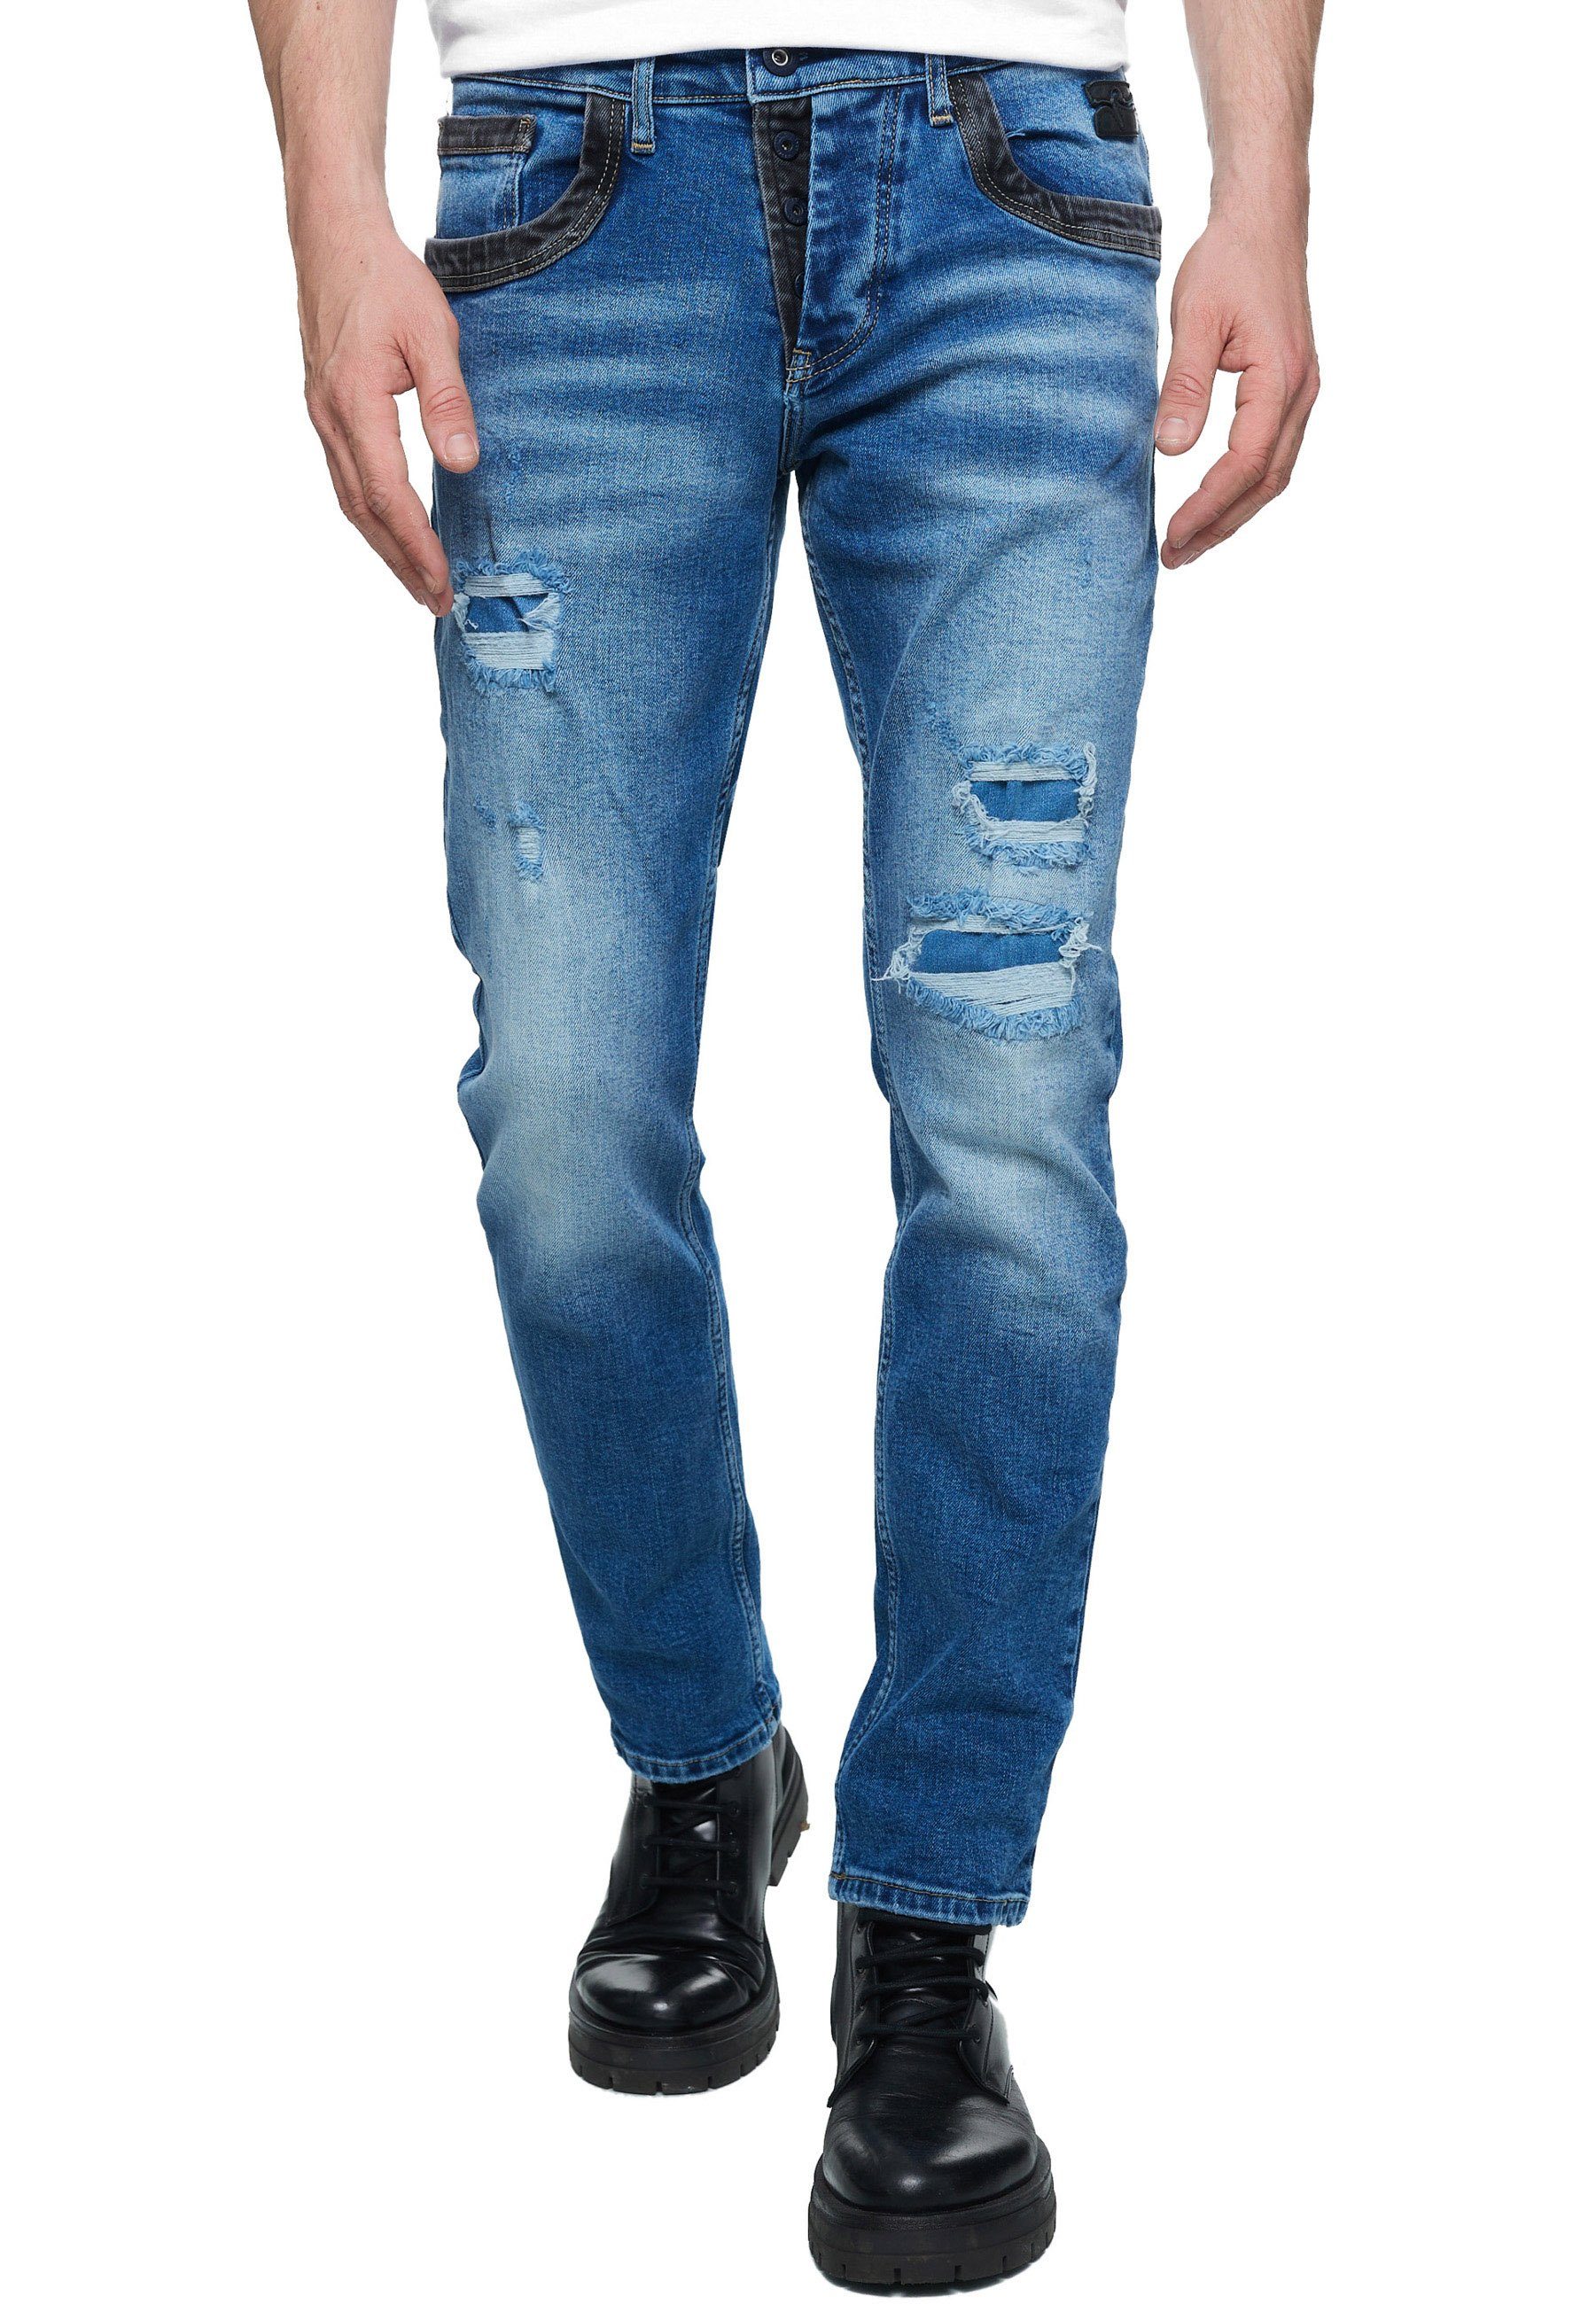 Rusty Neal Straight-Jeans YOKOTE mit farblich abgesetzten Details blau